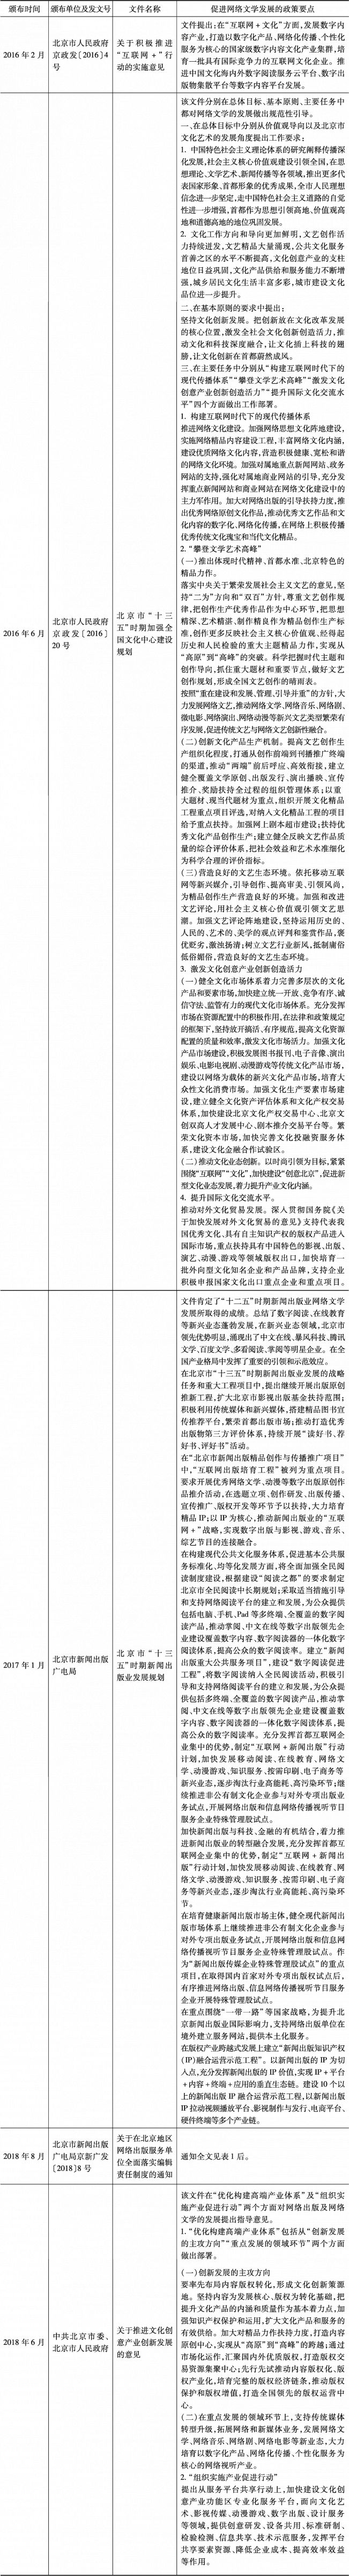 表1 北京市网络文学相关政策文件